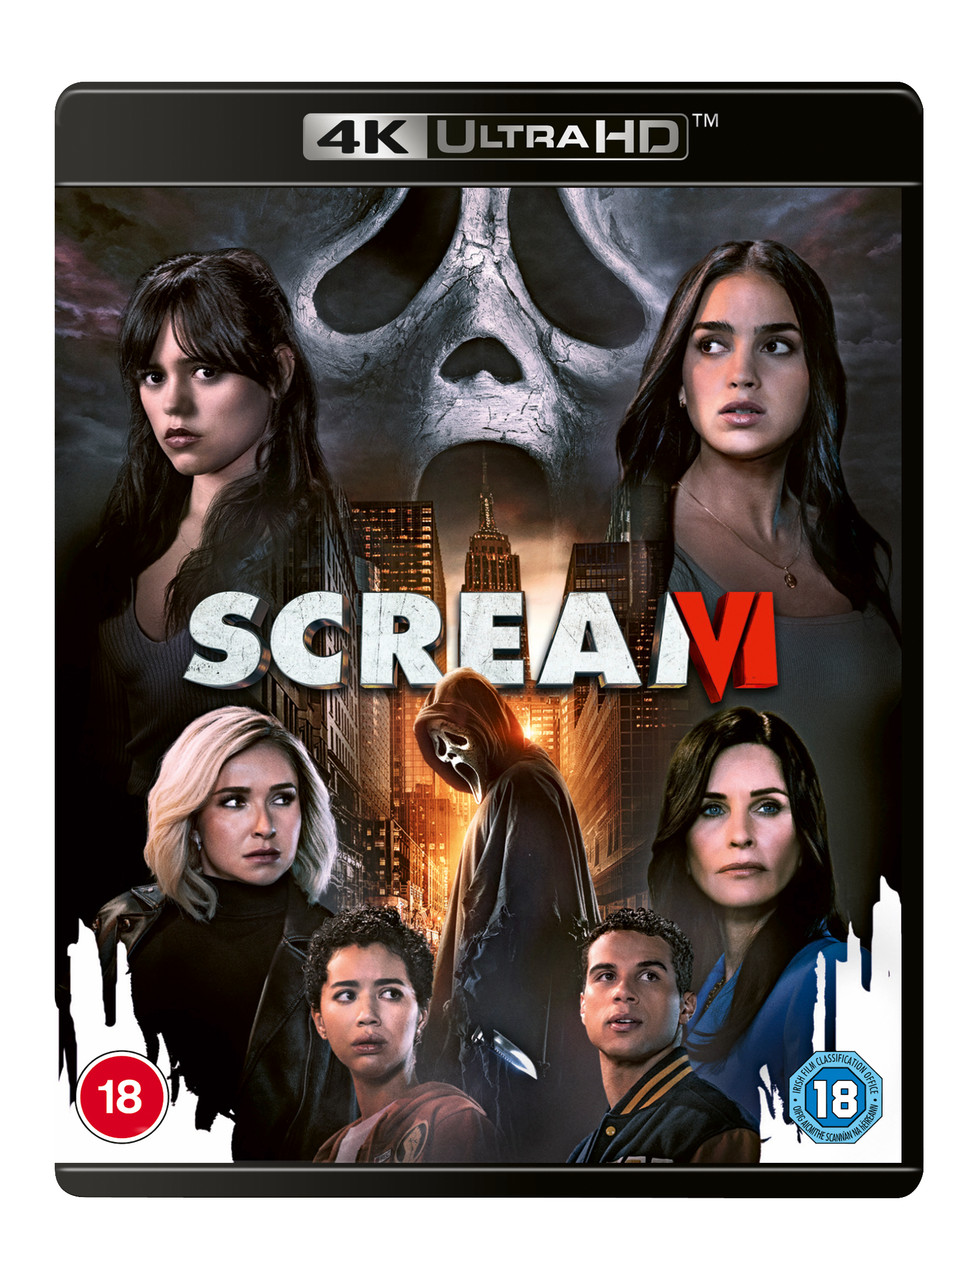 Watch Scream VI On Digital